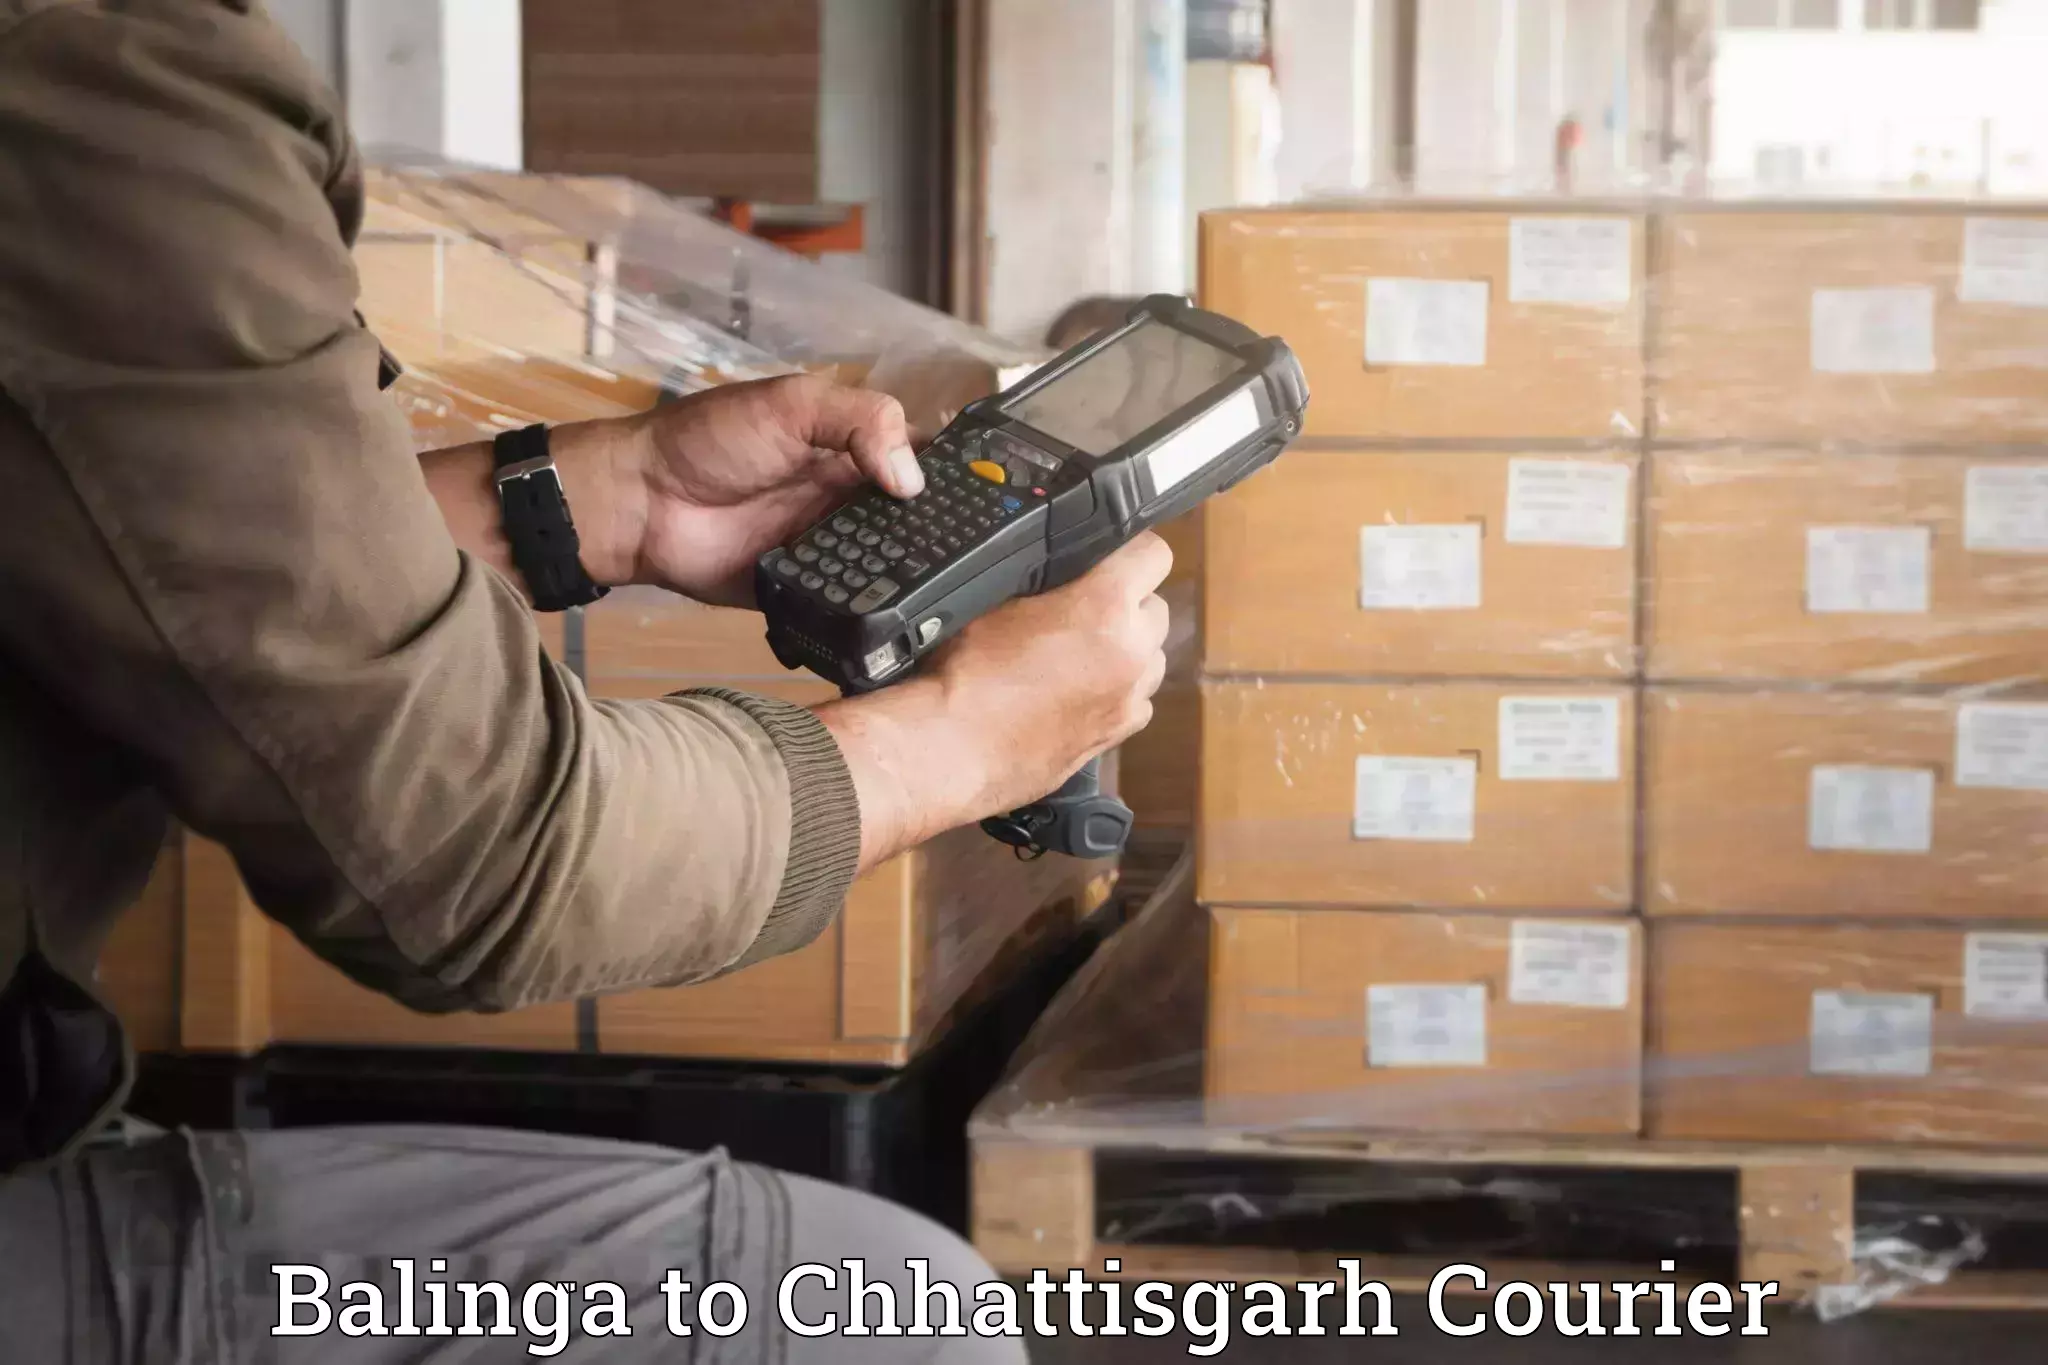 Moving and packing experts Balinga to Amakhokhara